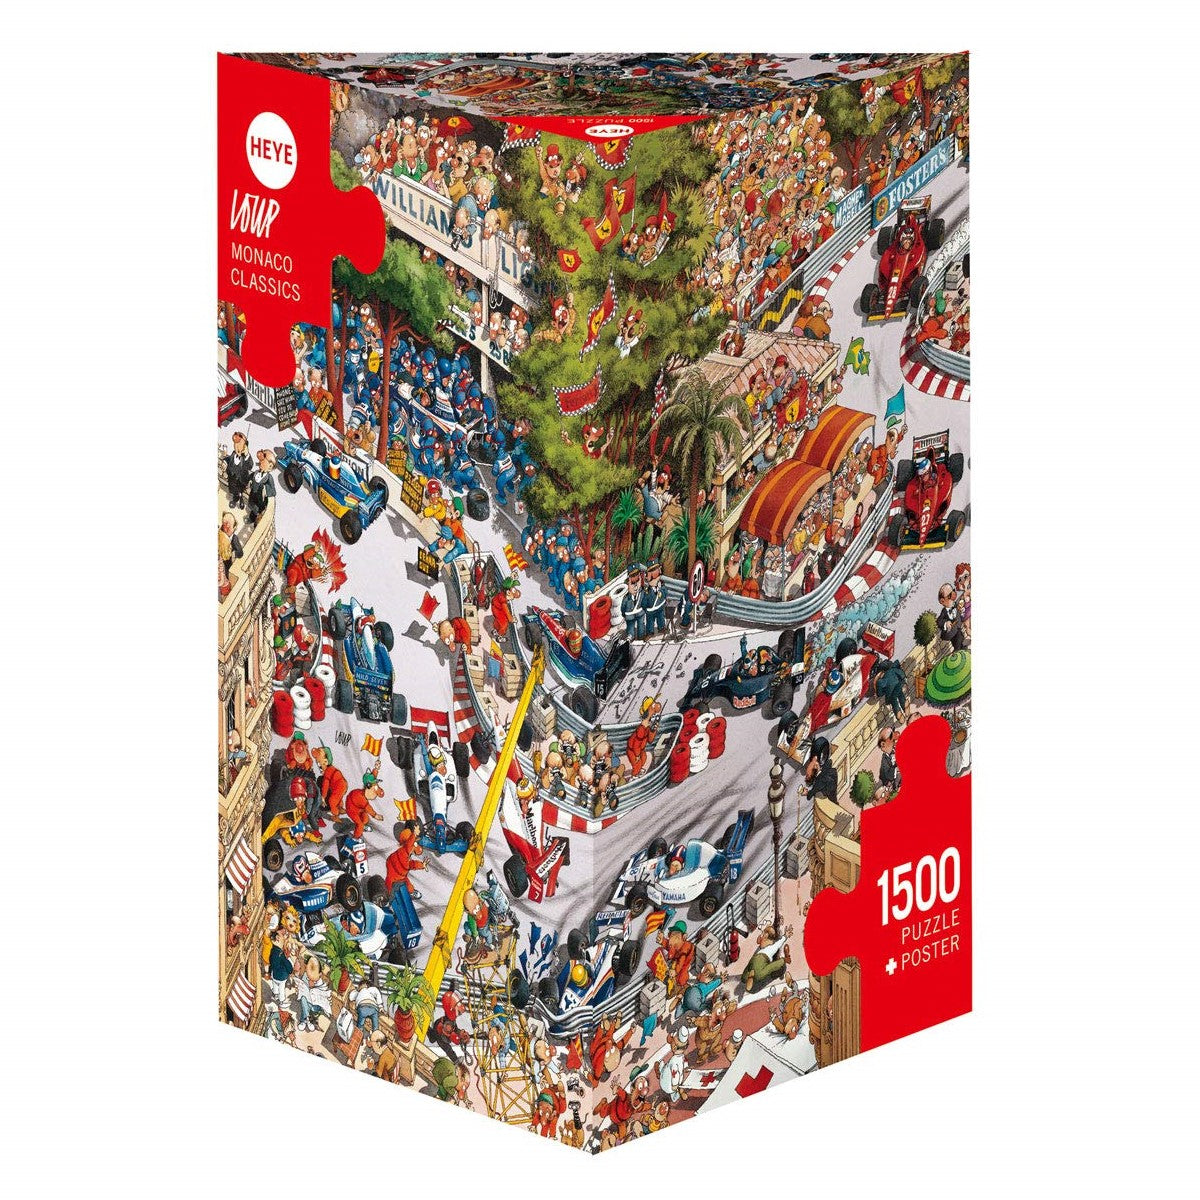 Heye - Loup - Monaco Classics 1500 Piece Jigsaw